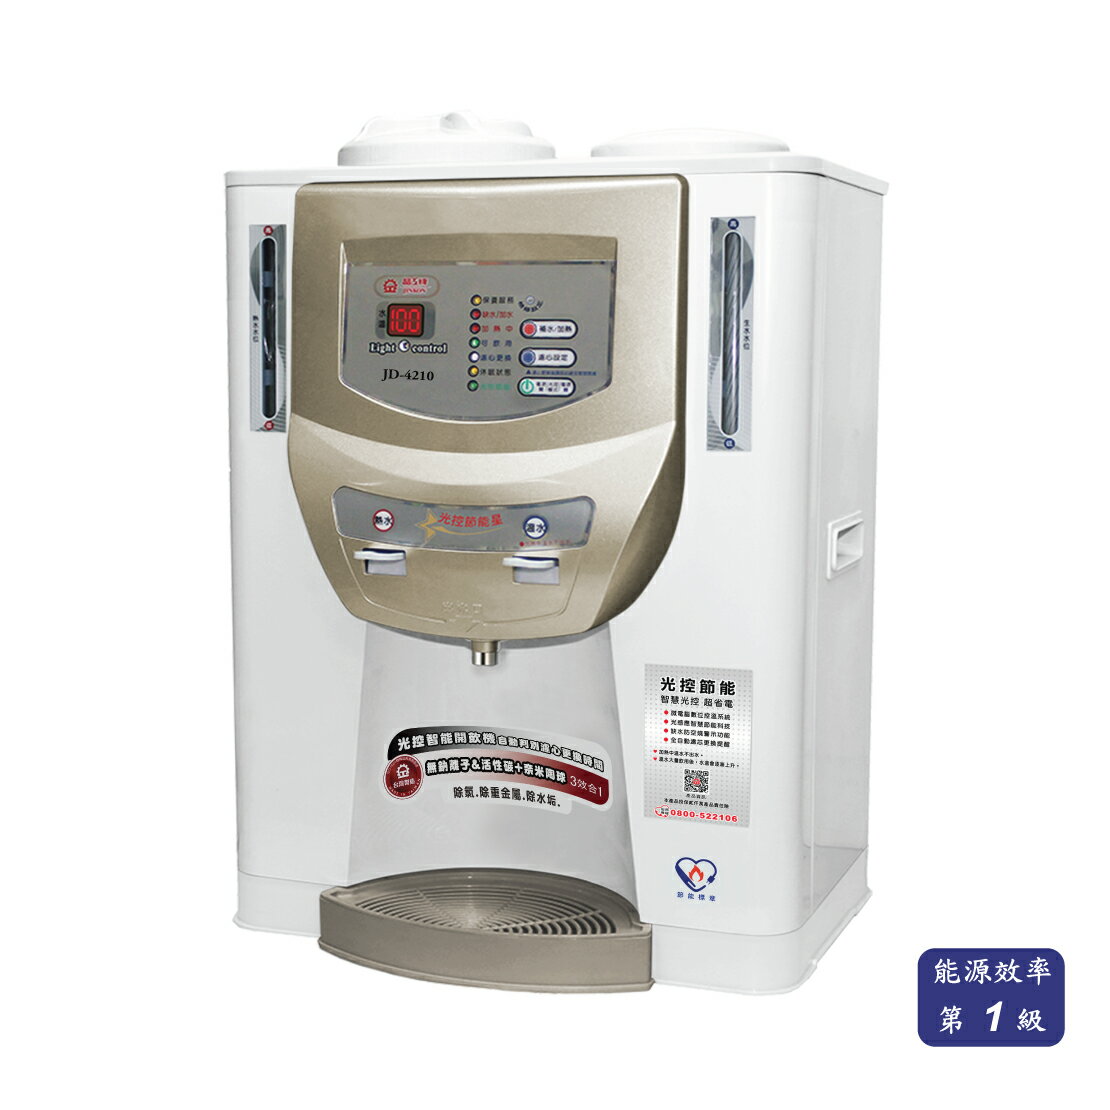 【晶工牌】JD-4210光控智慧溫熱開飲機(飲水機) 10.2L